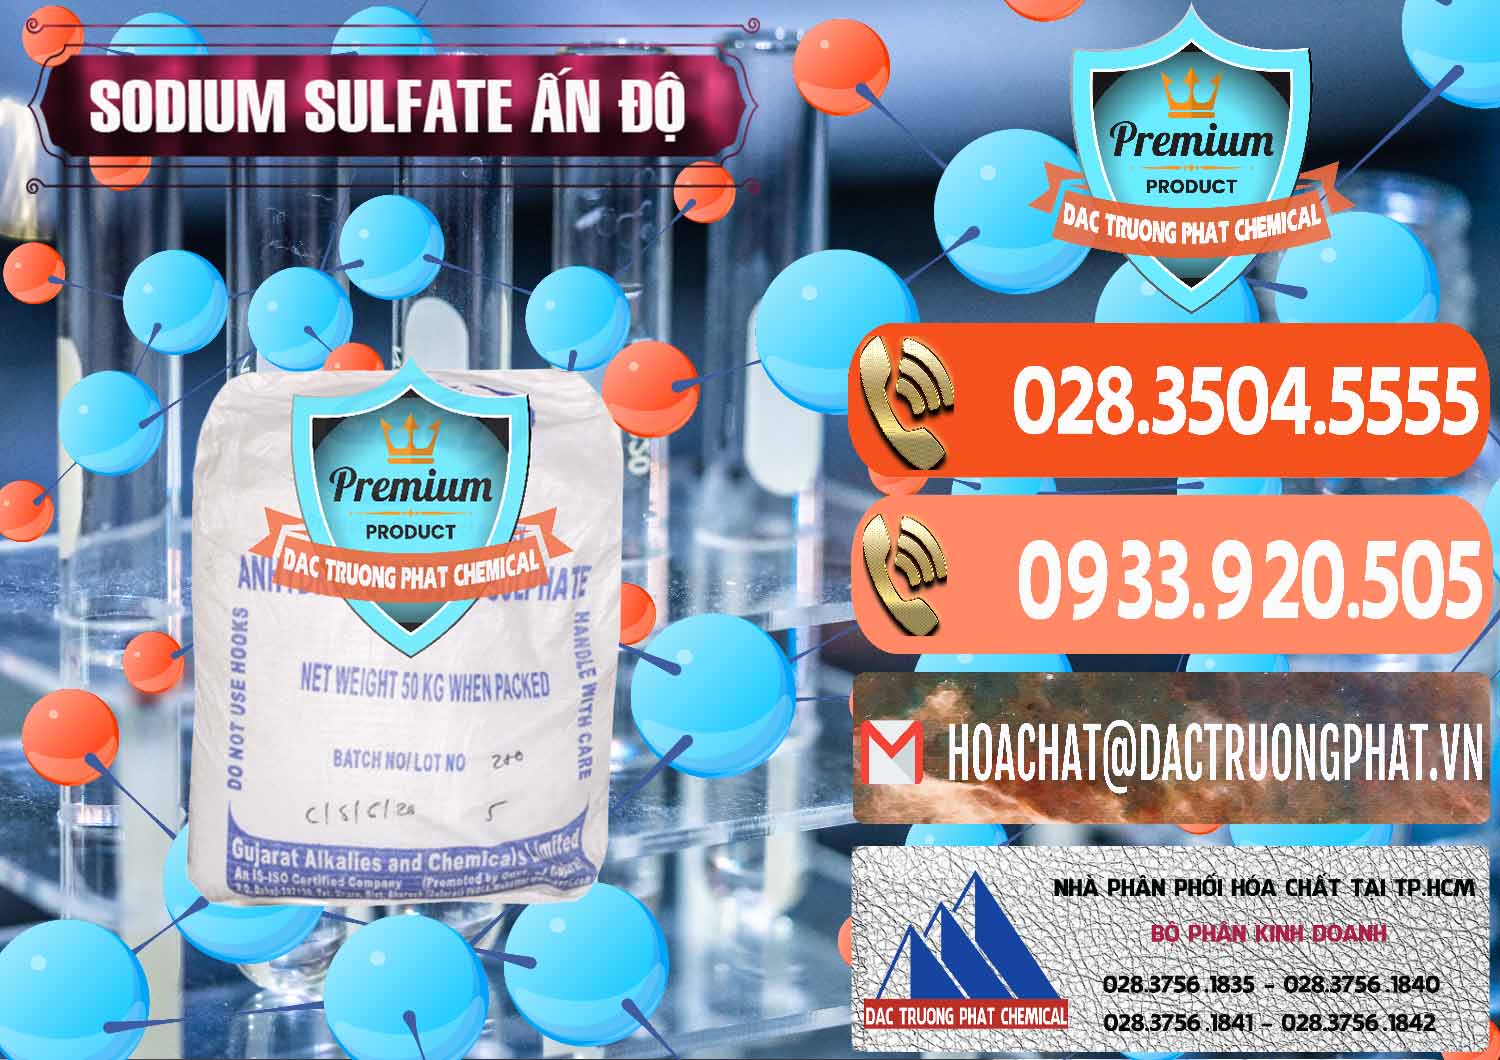 Nơi chuyên bán & cung cấp Sodium Sulphate - Muối Sunfat Na2SO4 GACL Ấn Độ India - 0461 - Công ty bán _ phân phối hóa chất tại TP.HCM - hoachatmientay.com